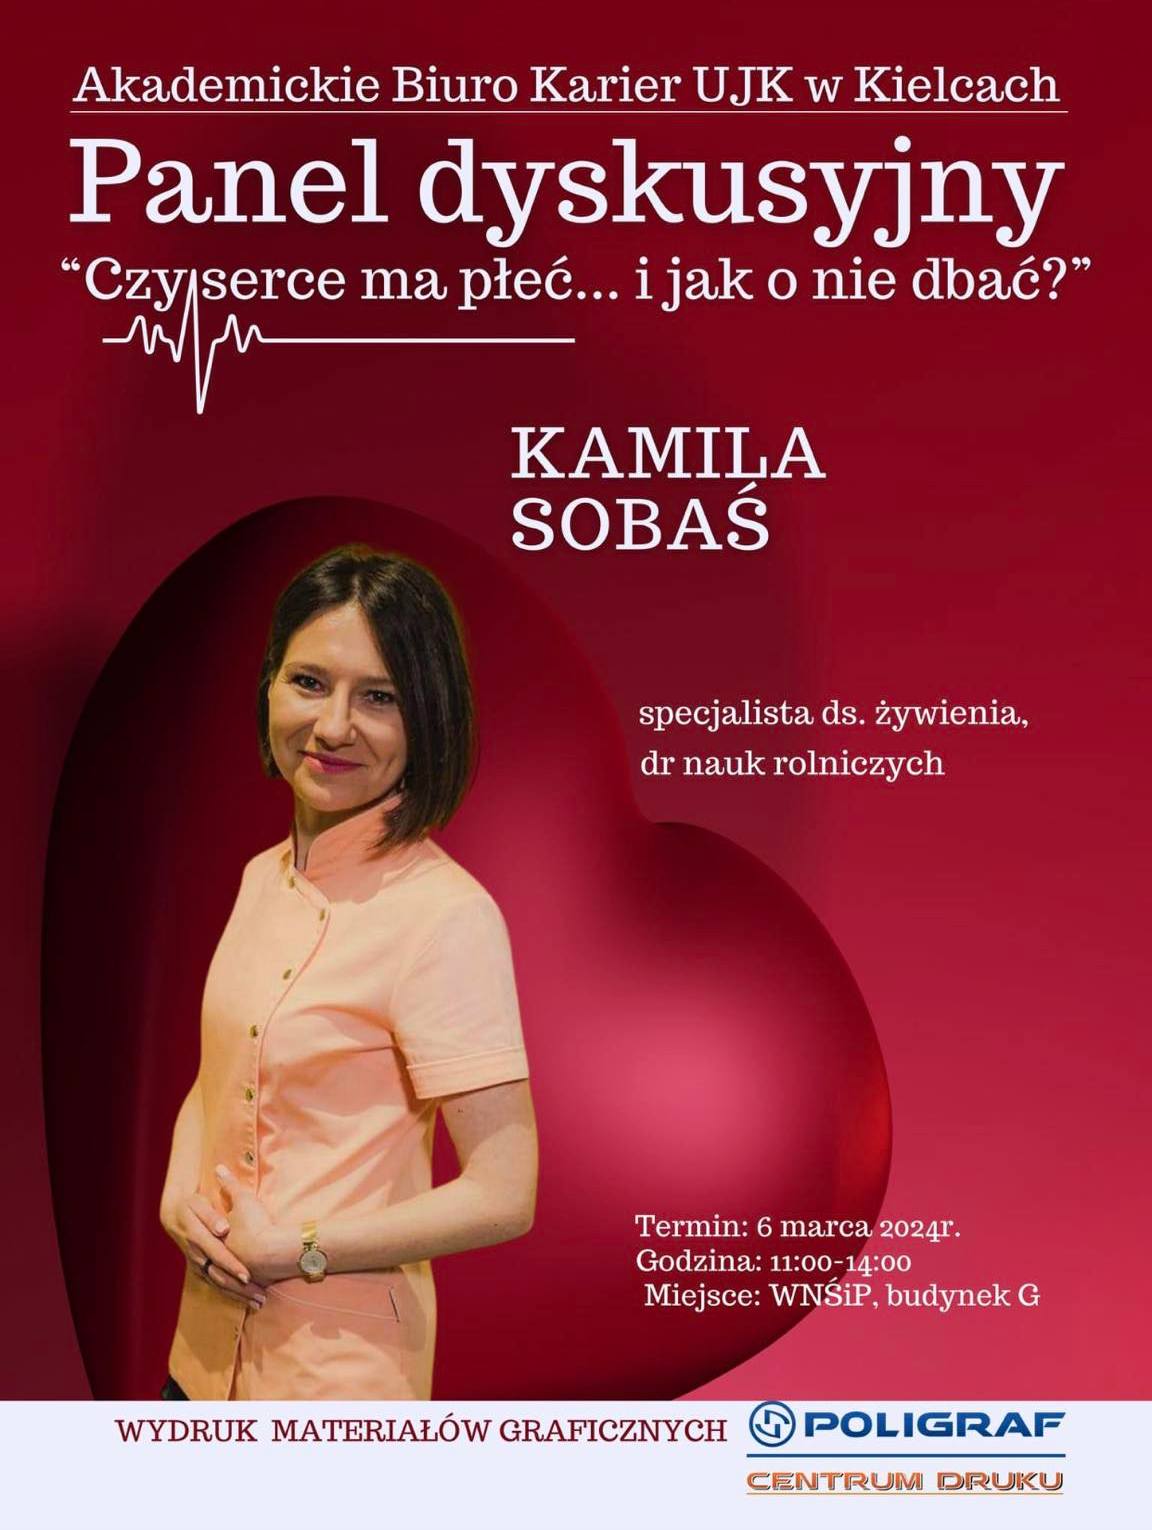 Panel dyskusyjny - Czy serce ma płeć - Kamila Sobas